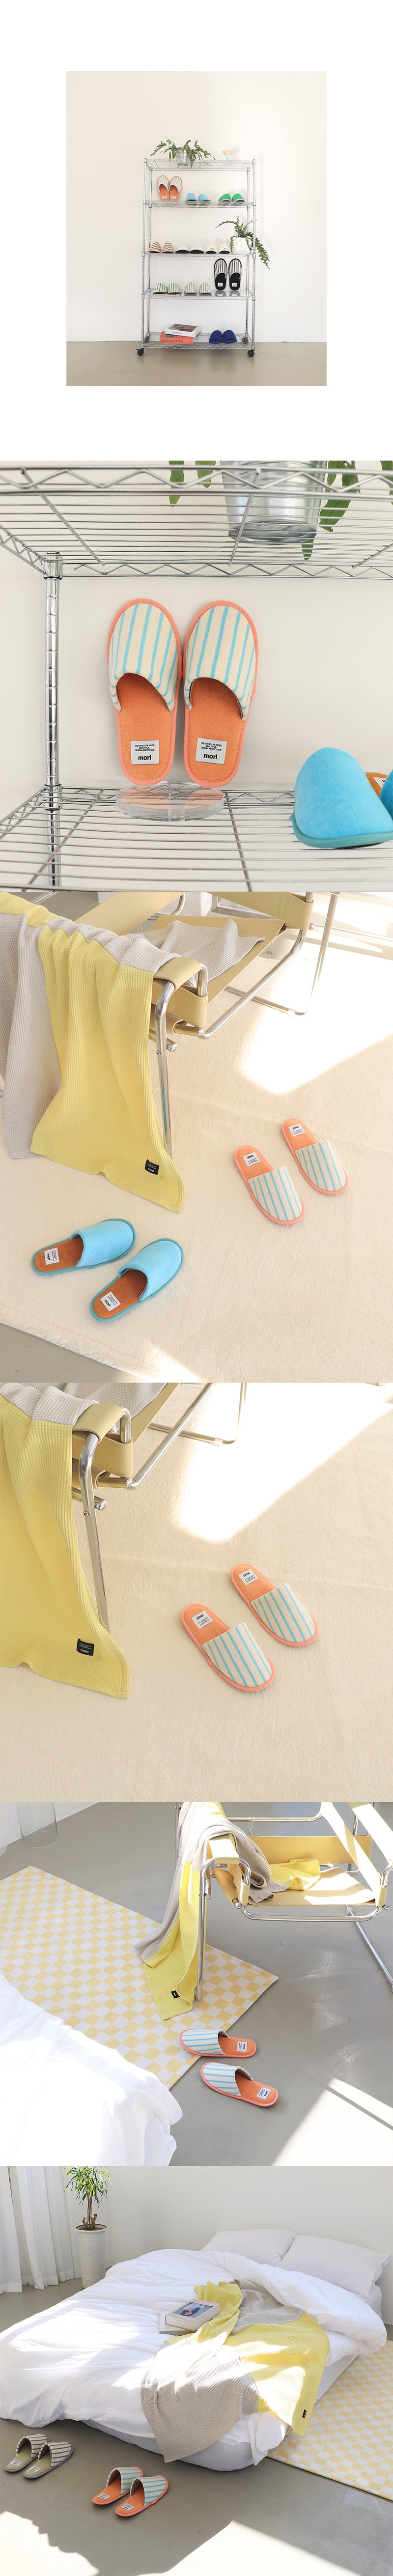 ストライプルームシューズ / Stripe room shoes (4design)